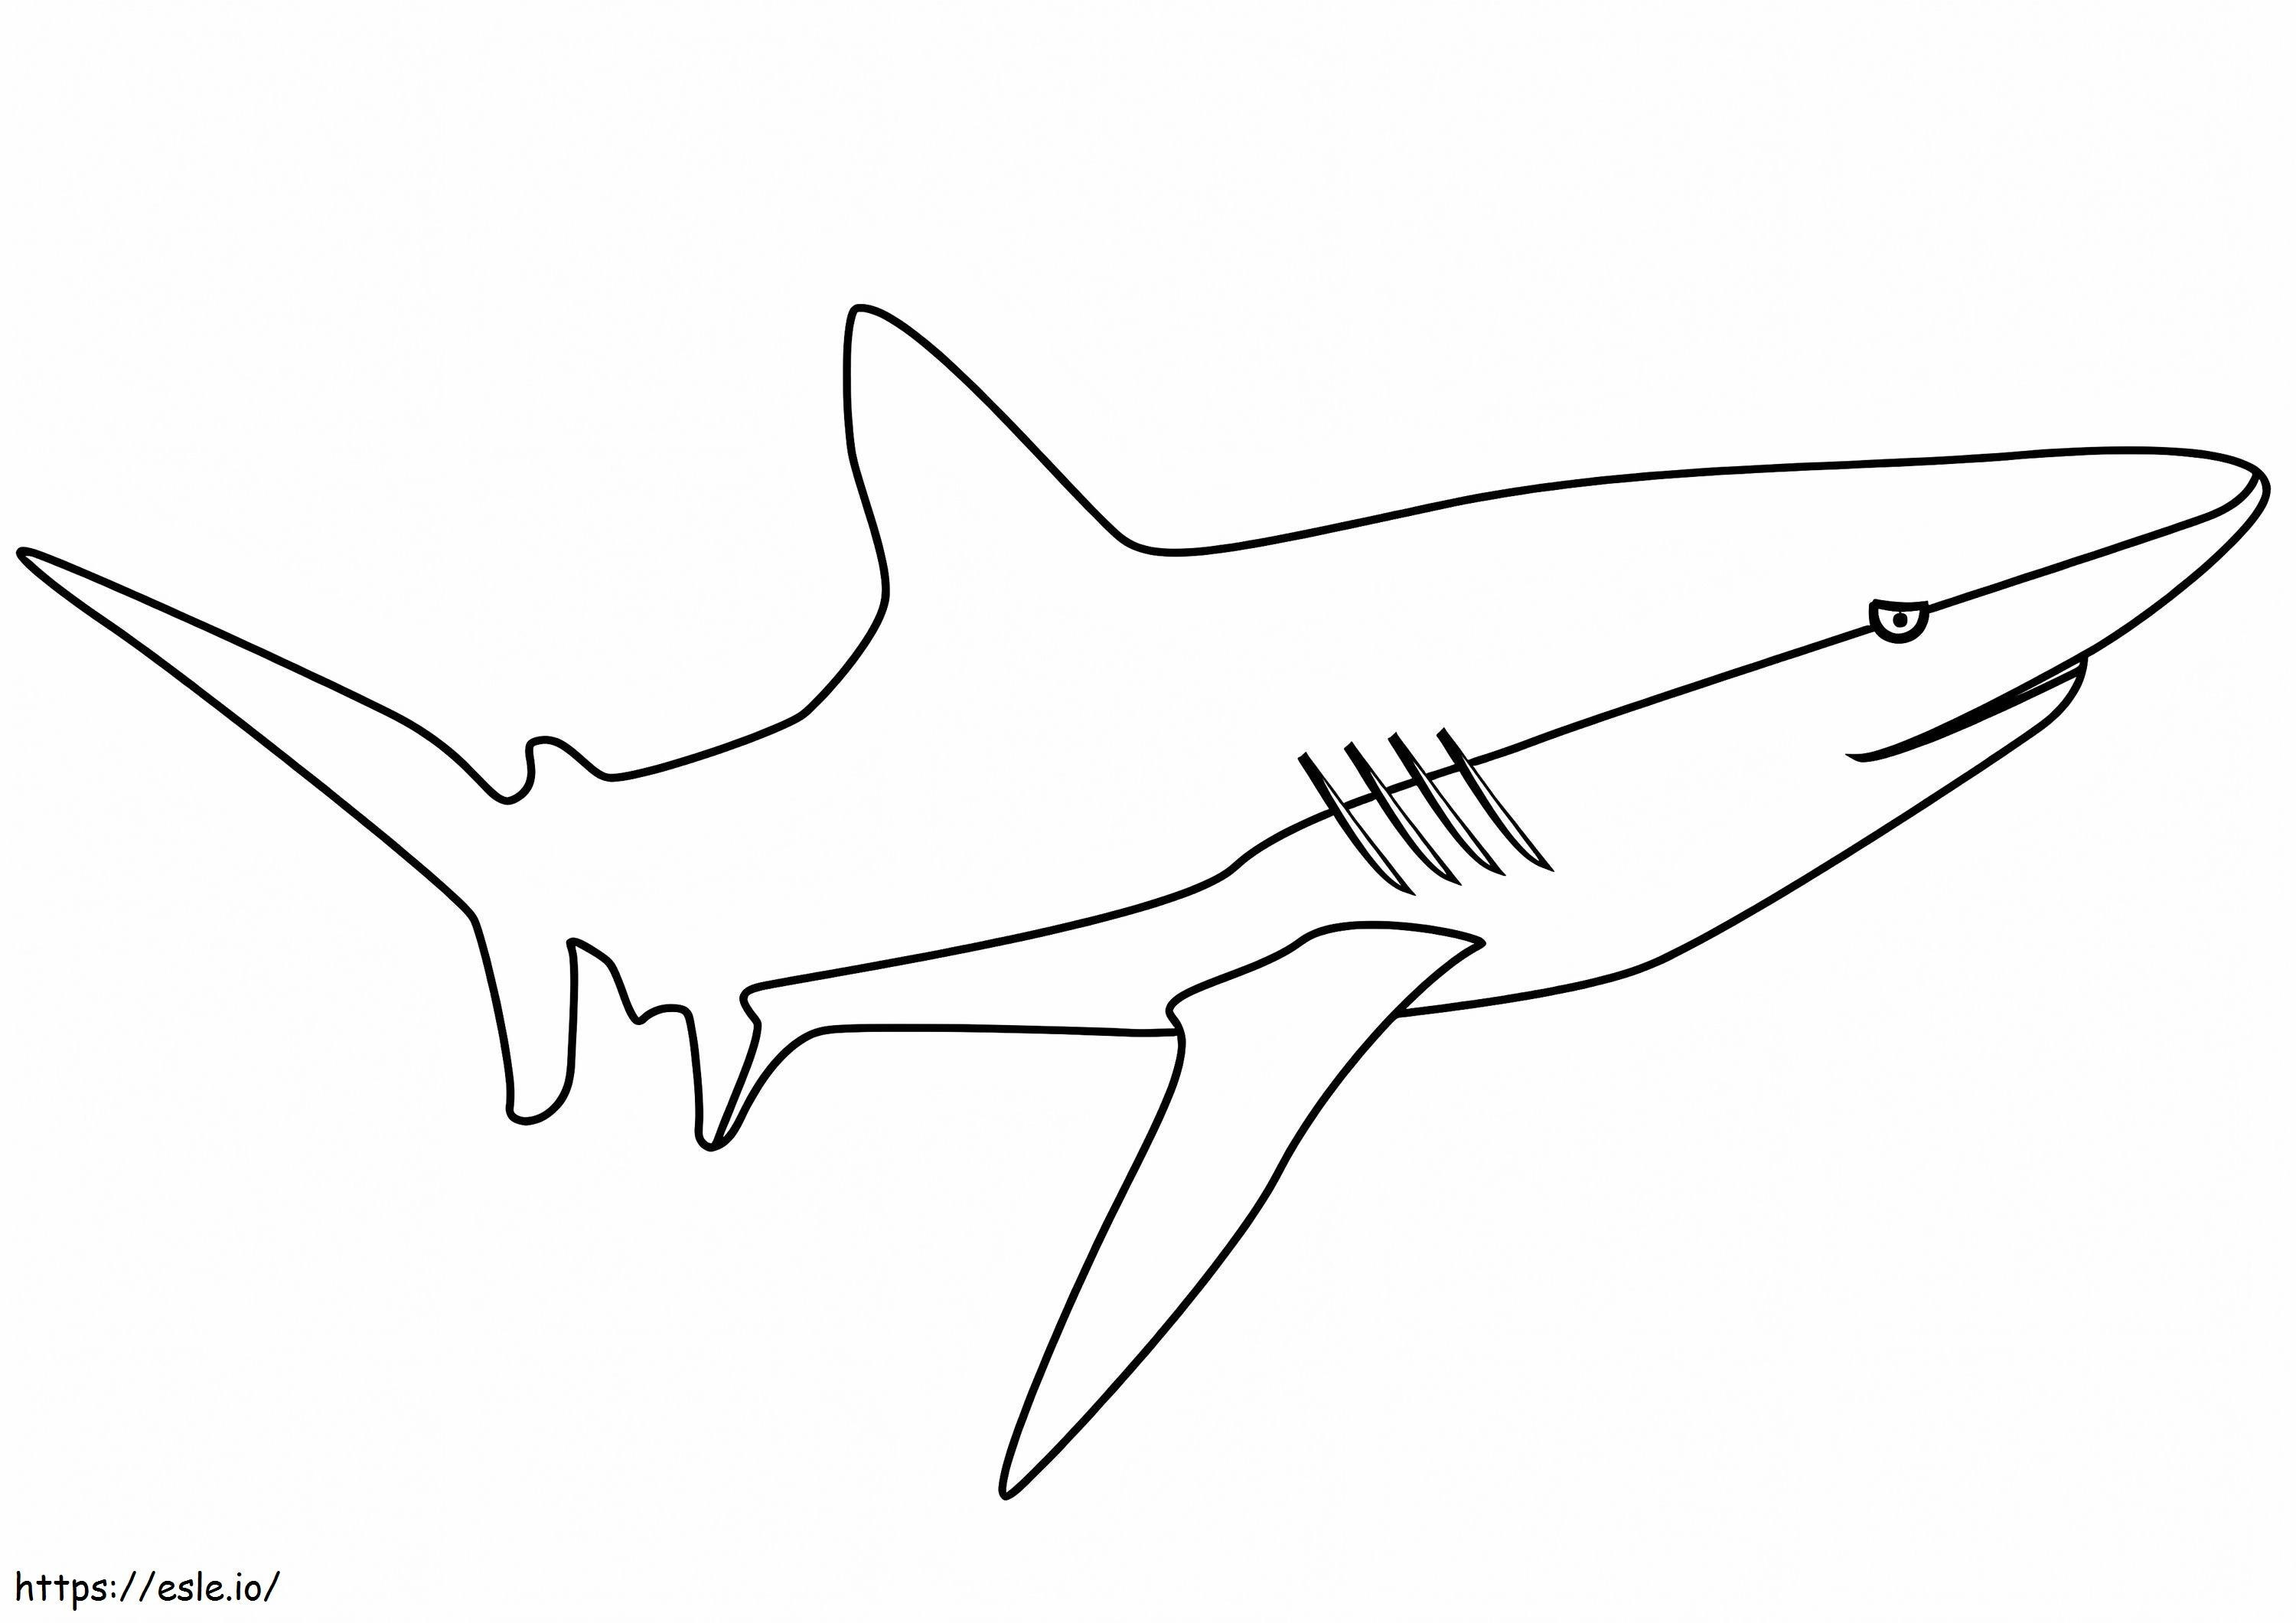 Erittäin helppo hai värityskuva